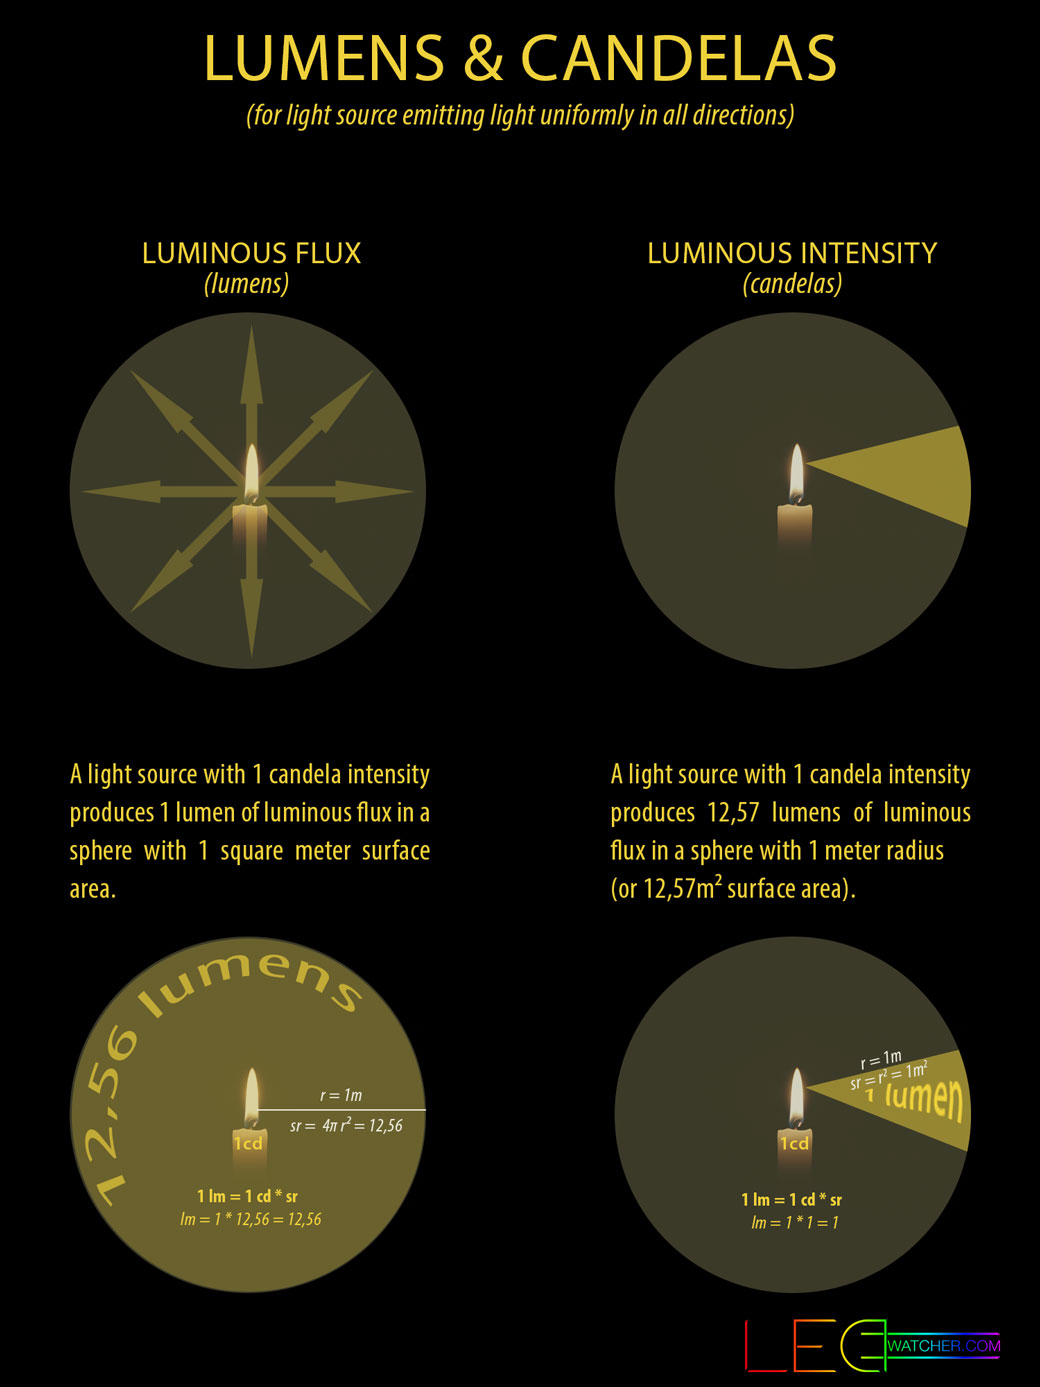 light measurements explained | ledwatcher